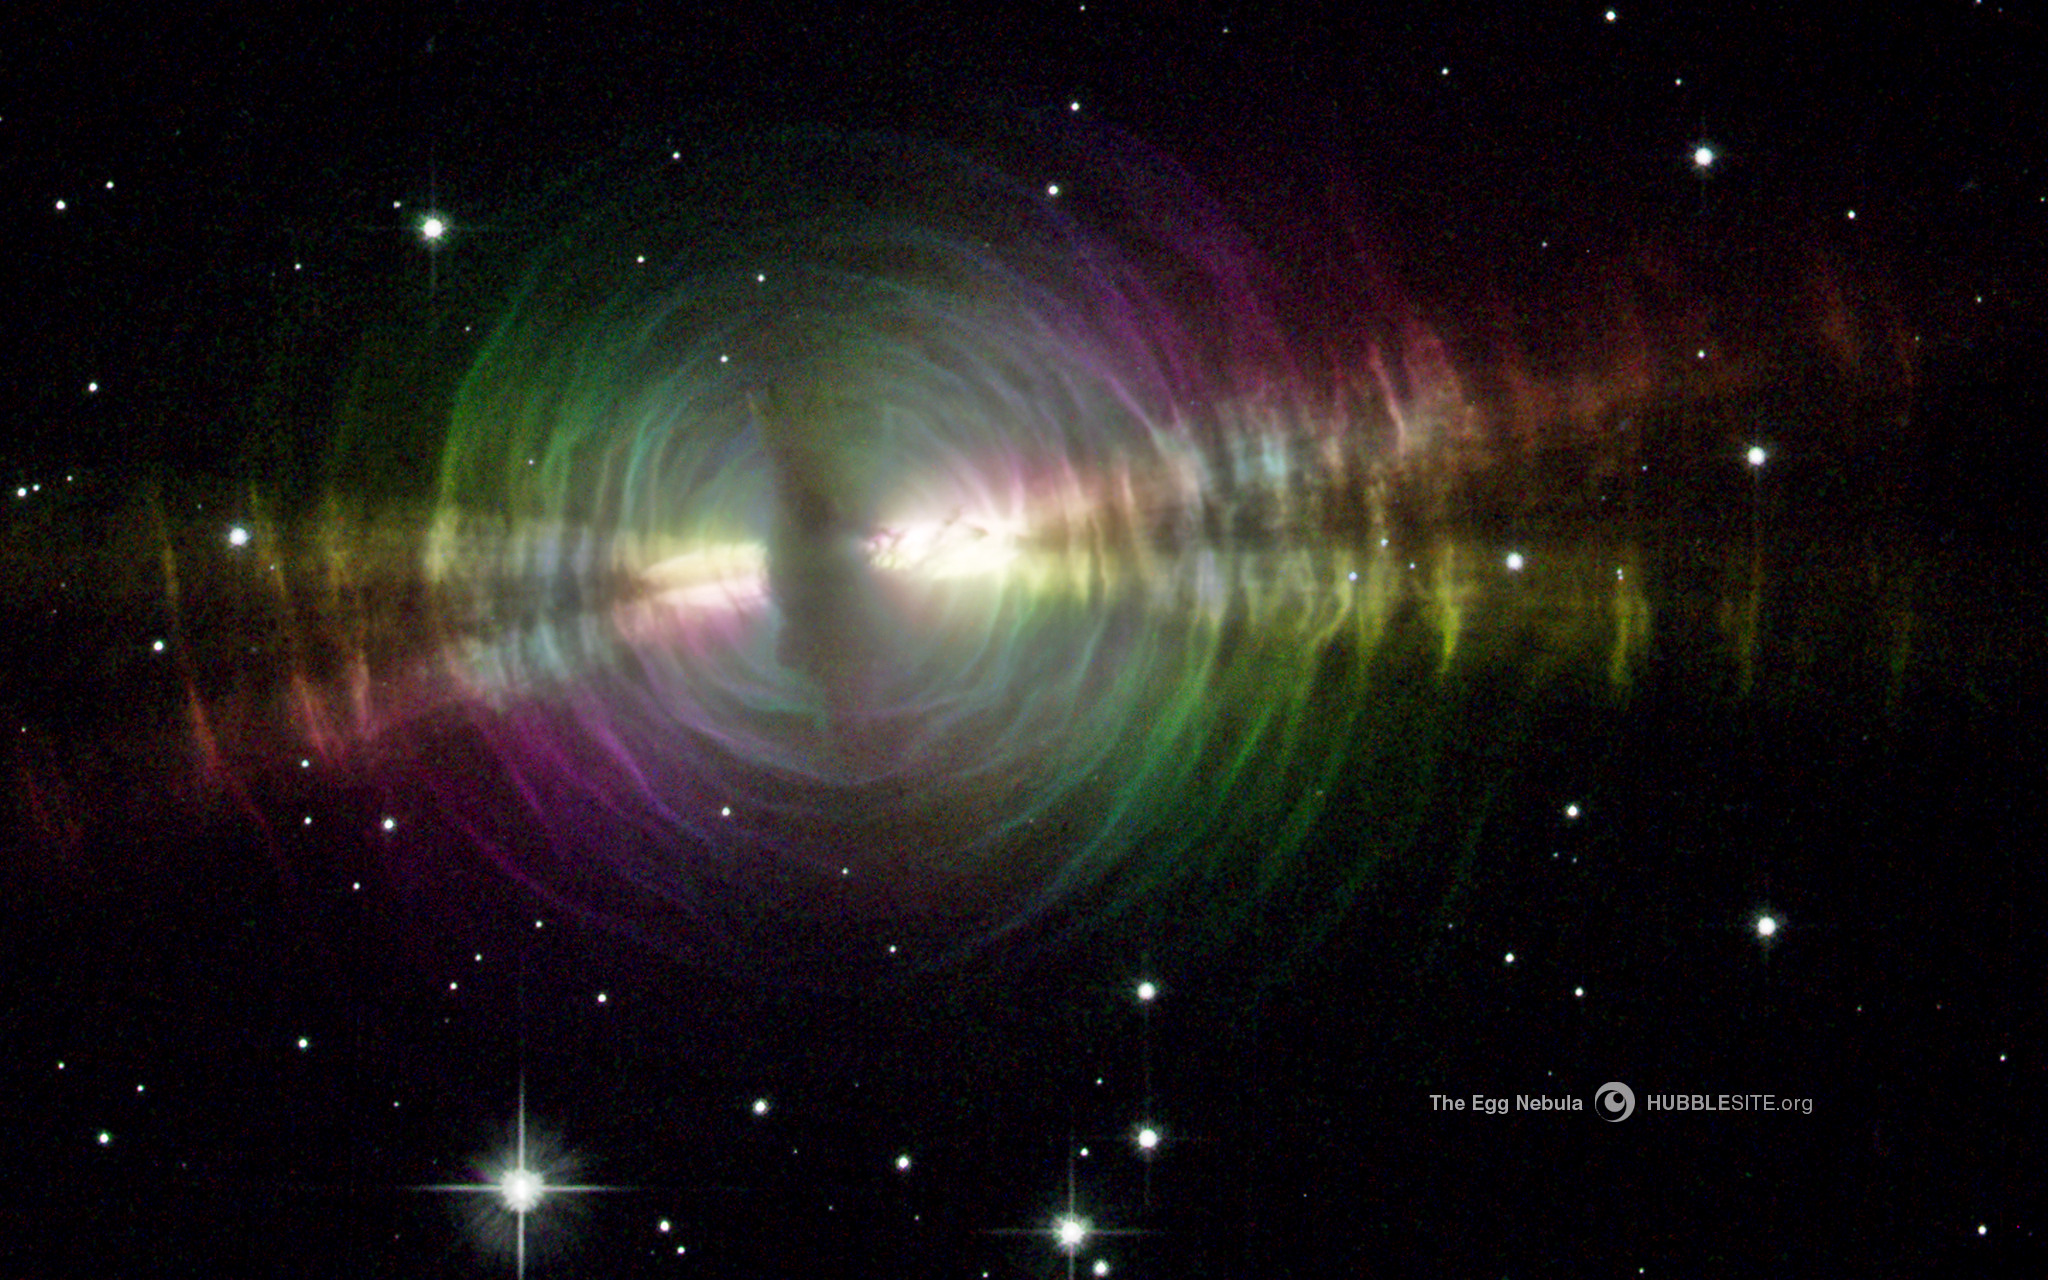 Rainbow Image of the Egg Nebula